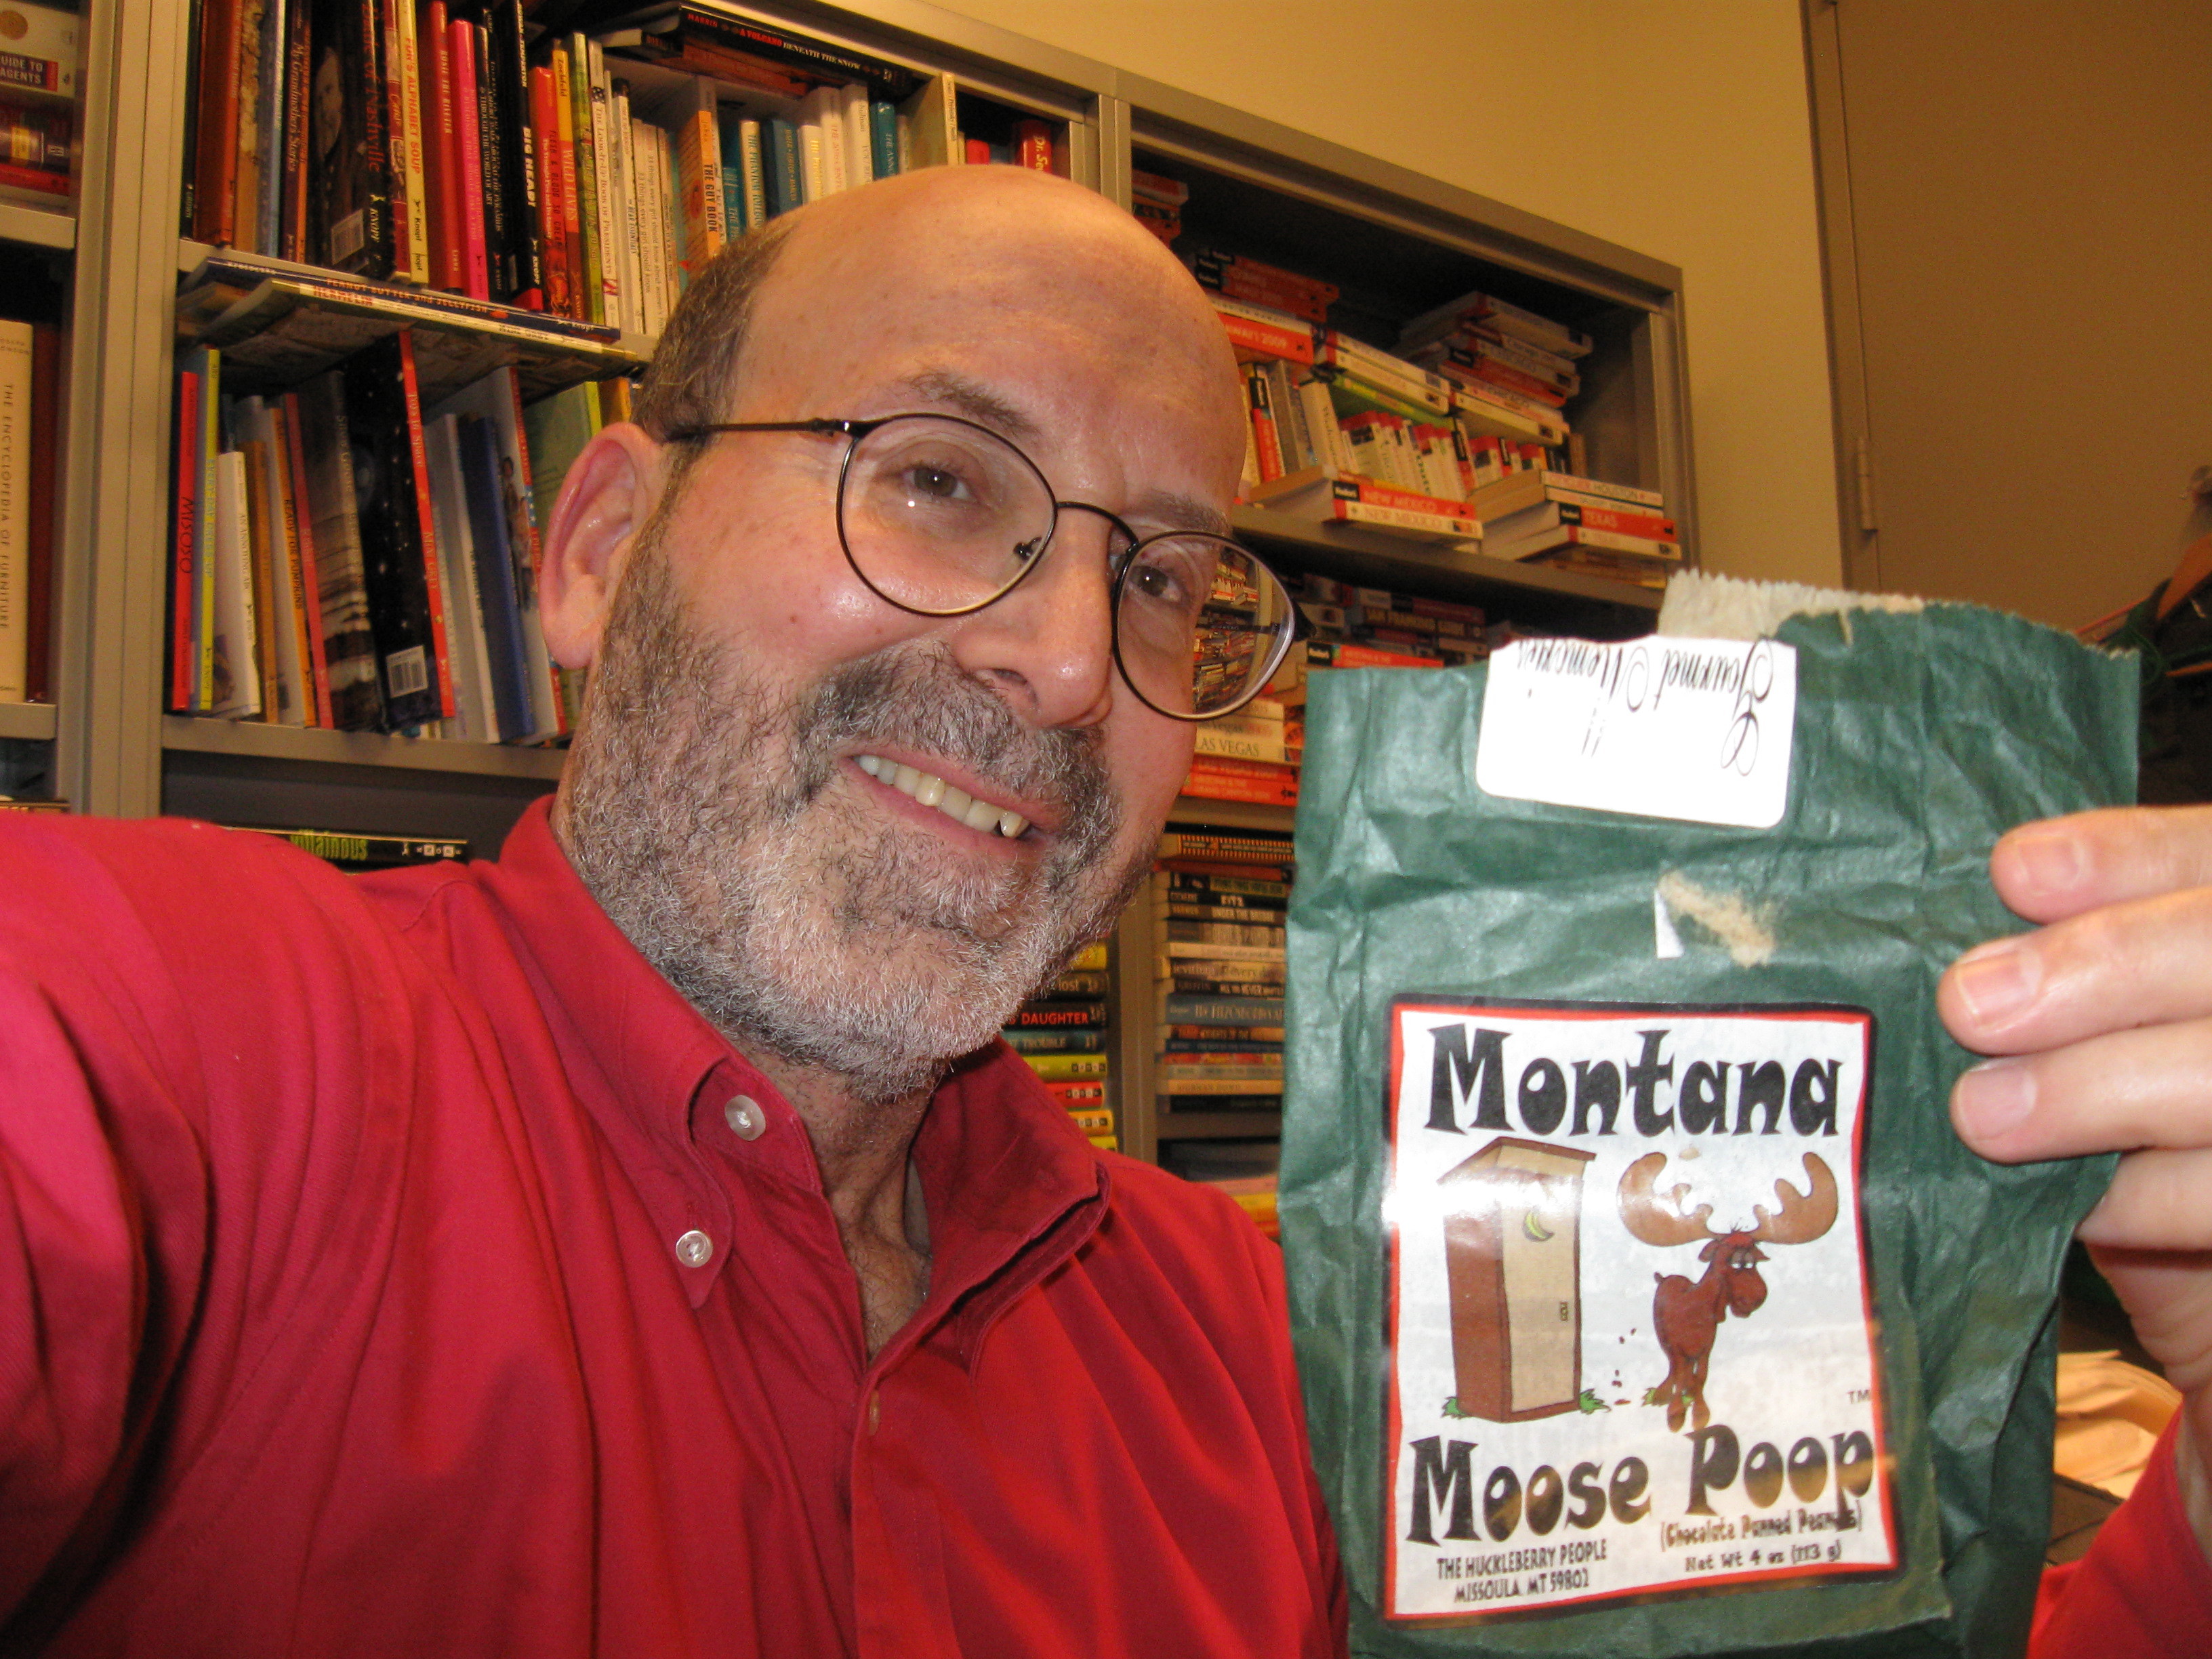 Montana Moose Poop, Artie Bennett